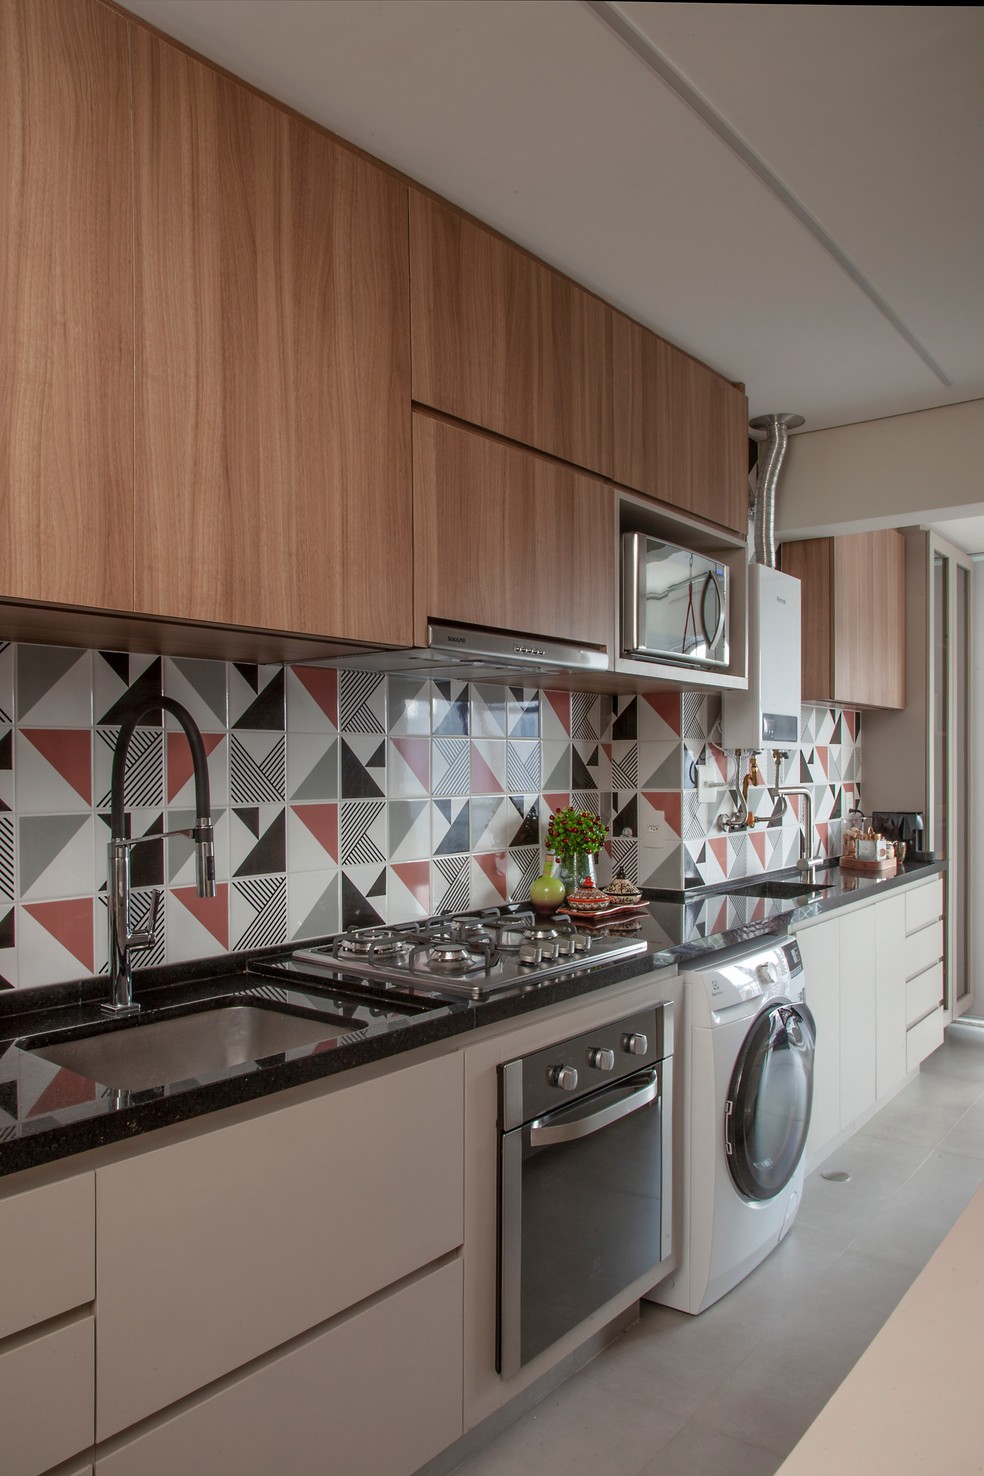 Eletrodomésticos embutidos, como o fogão nesta cozinha projetada pelo Studio Tan-gram, ajuda a otimizar o espaço — Foto: Luis Gomes